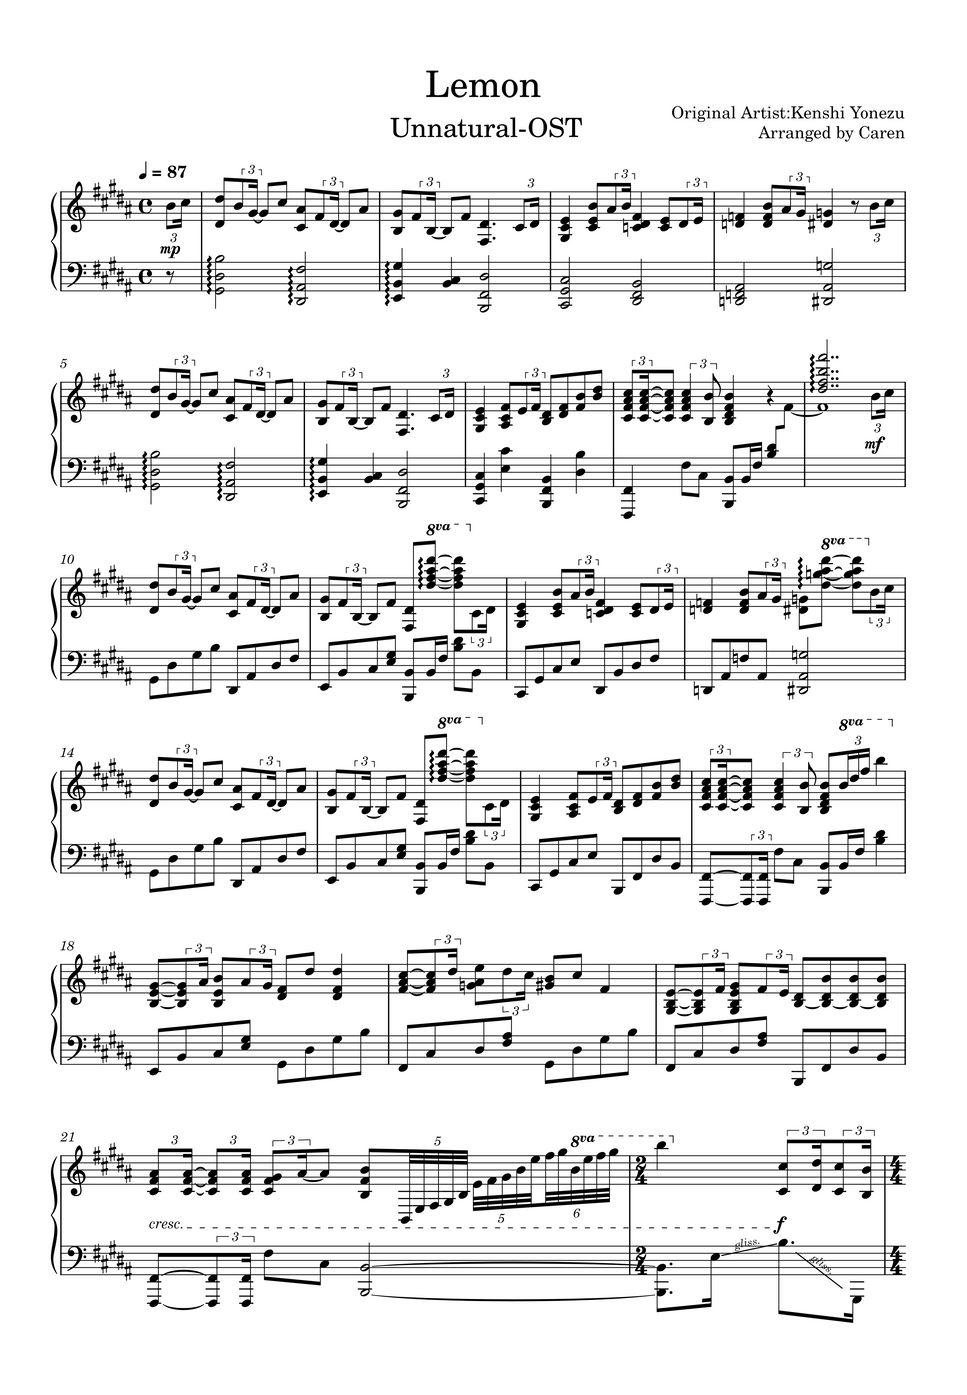 メドレー(米津玄師) - [Piano]Lemon - アンナチュラル 主題歌/ED by Caren